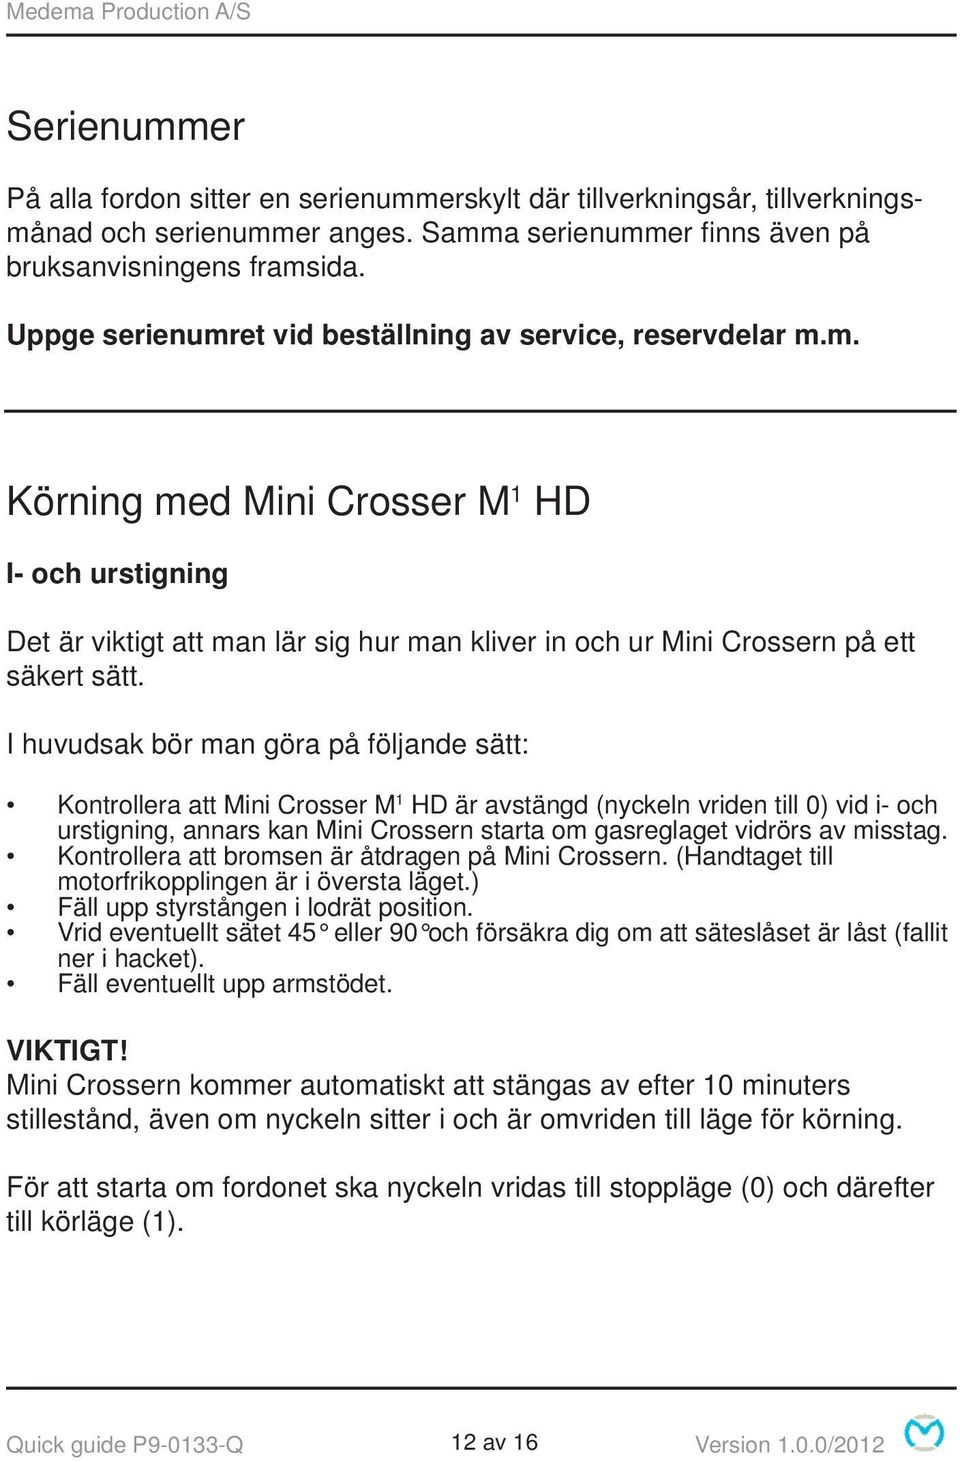 I huvudsak bör man göra på följande sätt: Kontrollera att Mini Crosser M 1 HD är avstängd (nyckeln vriden till 0) vid i- och urstigning, annars kan Mini Crossern starta om gasreglaget vidrörs av